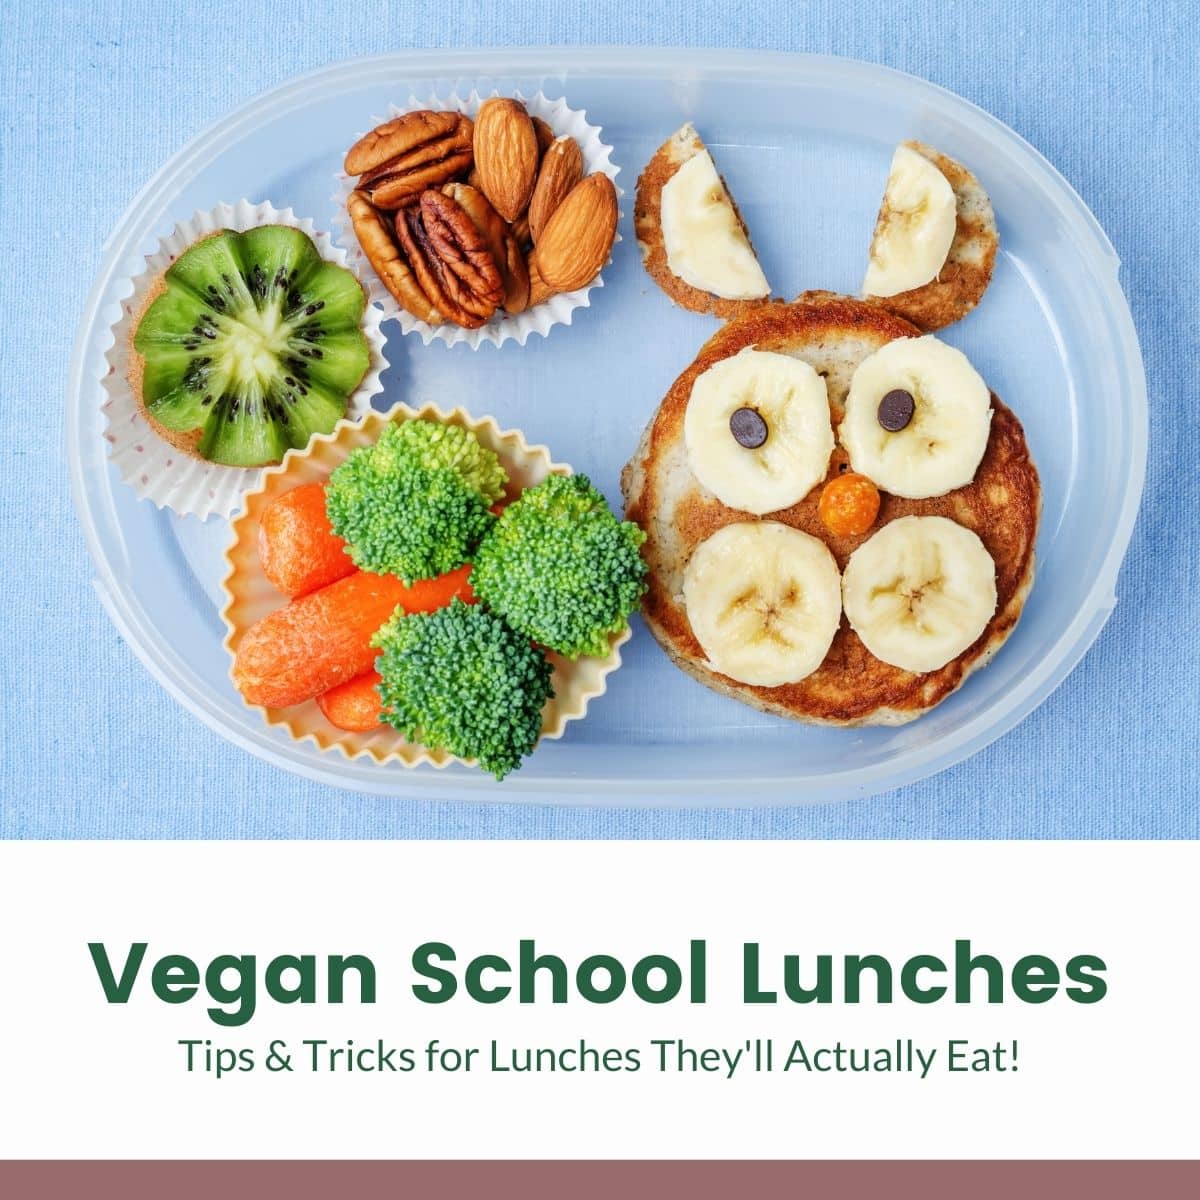 https://www.vegkitchen.com/wp-content/uploads/2021/08/vegan-school-lunches-1.jpg